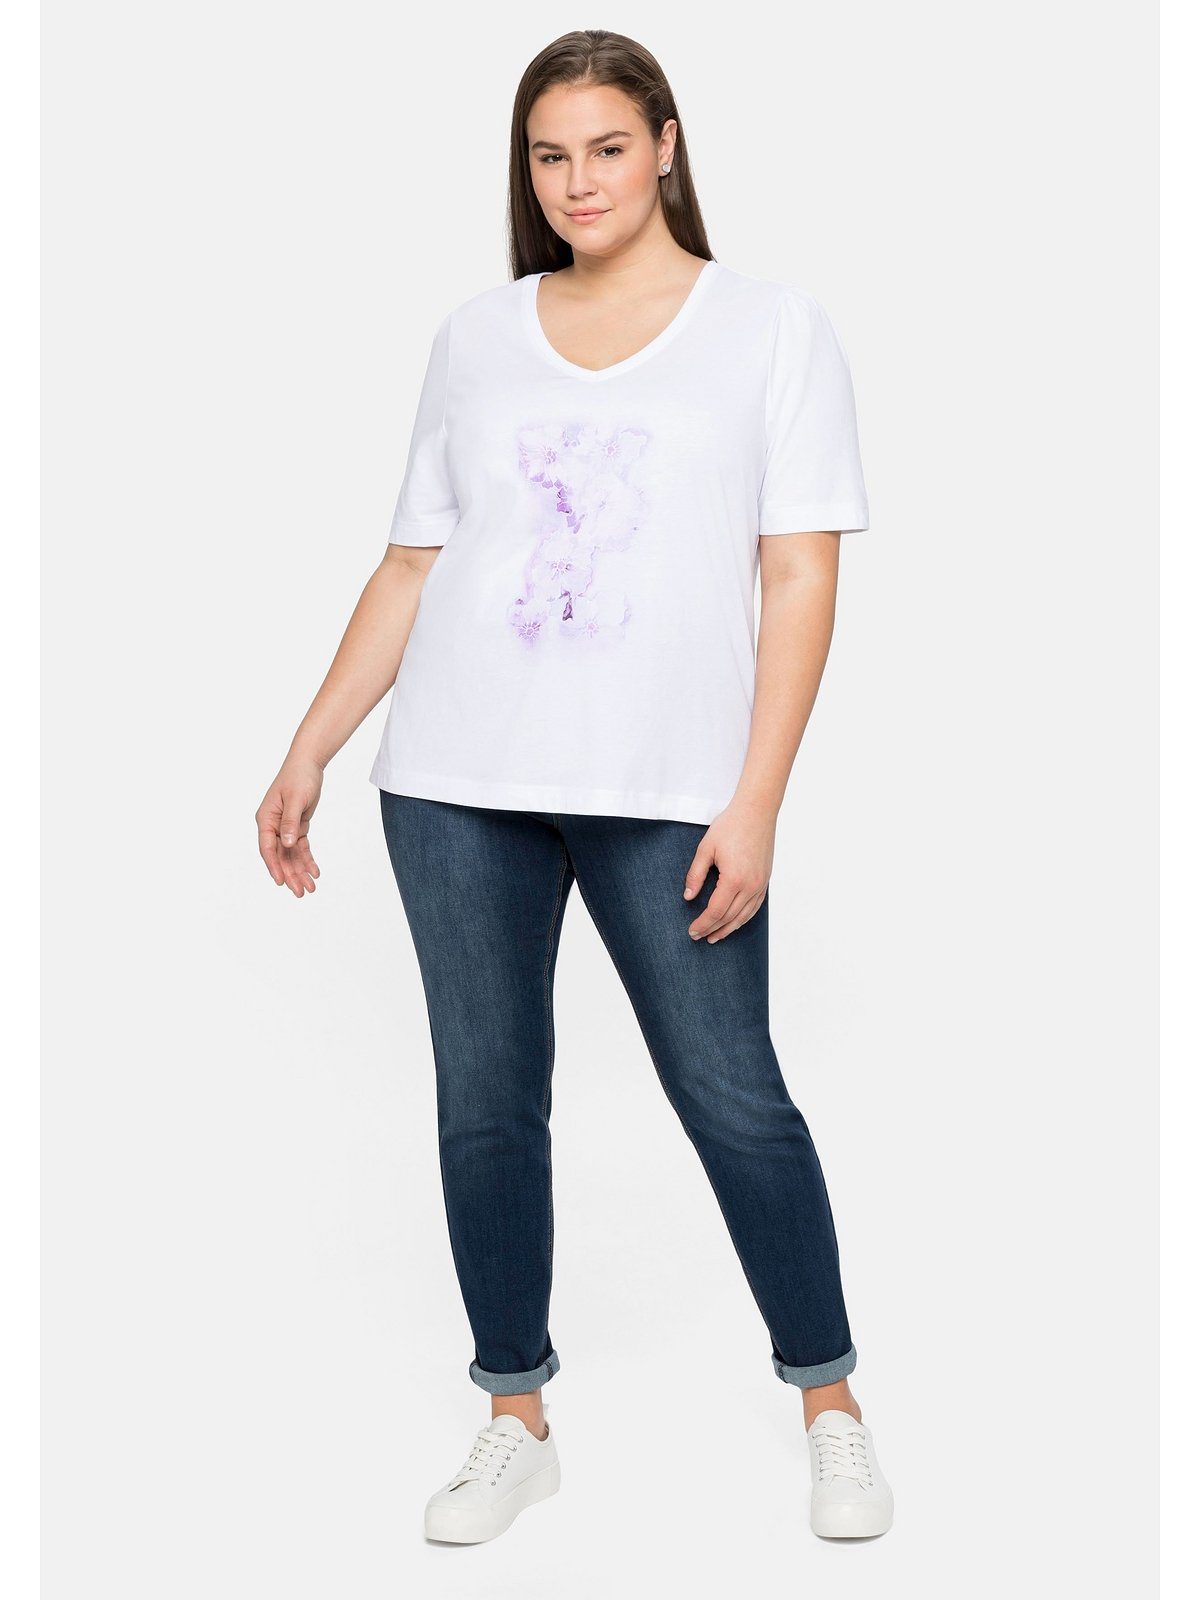 Sheego T-Shirt Große mit Baumwolle weiß Größen Frontdruck aus